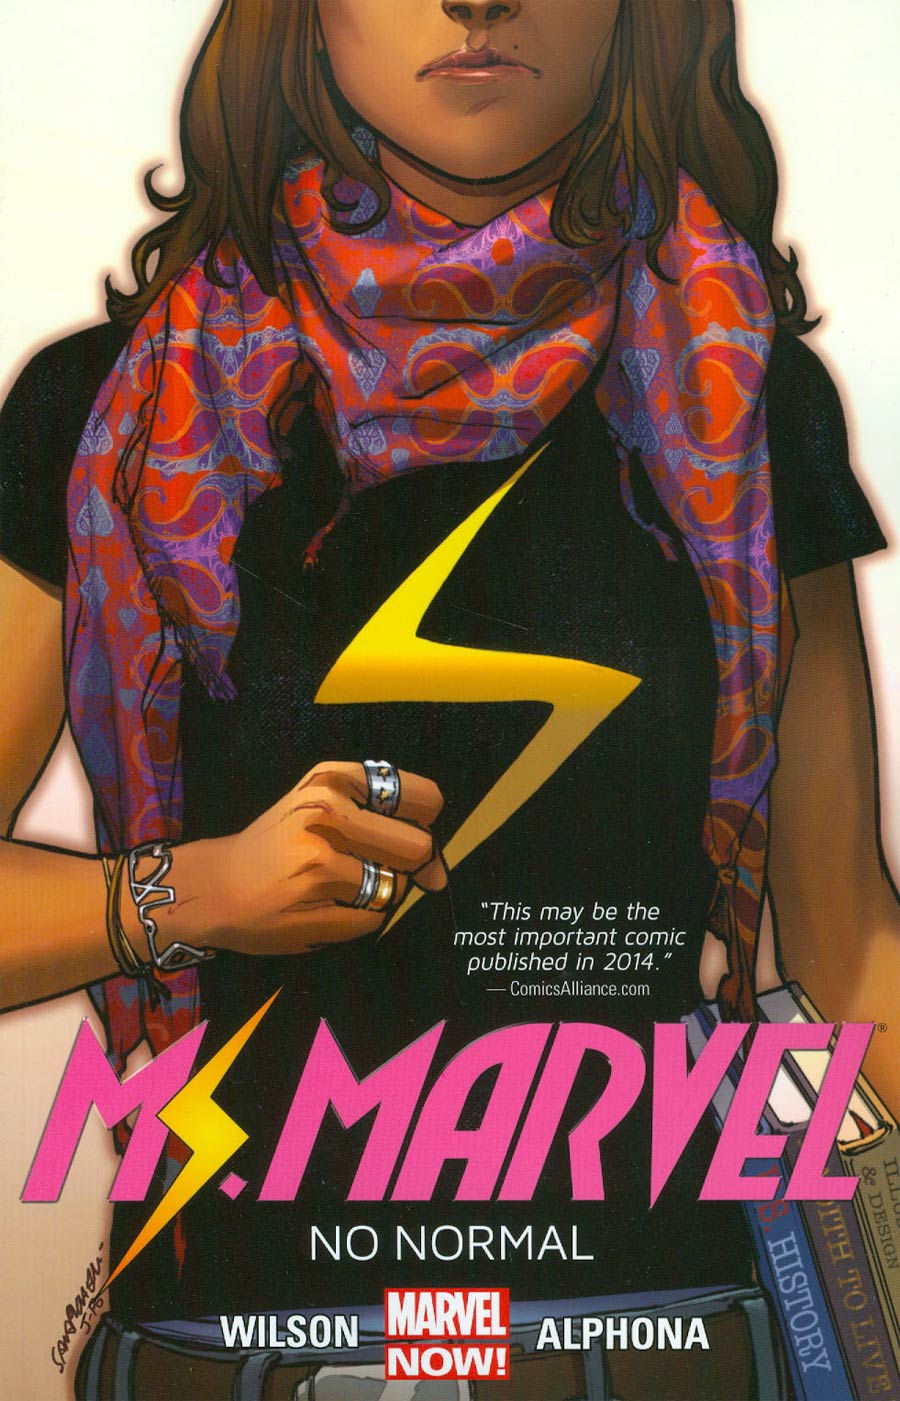 Ms Marvel (2014) Vol 1 No Normal TP